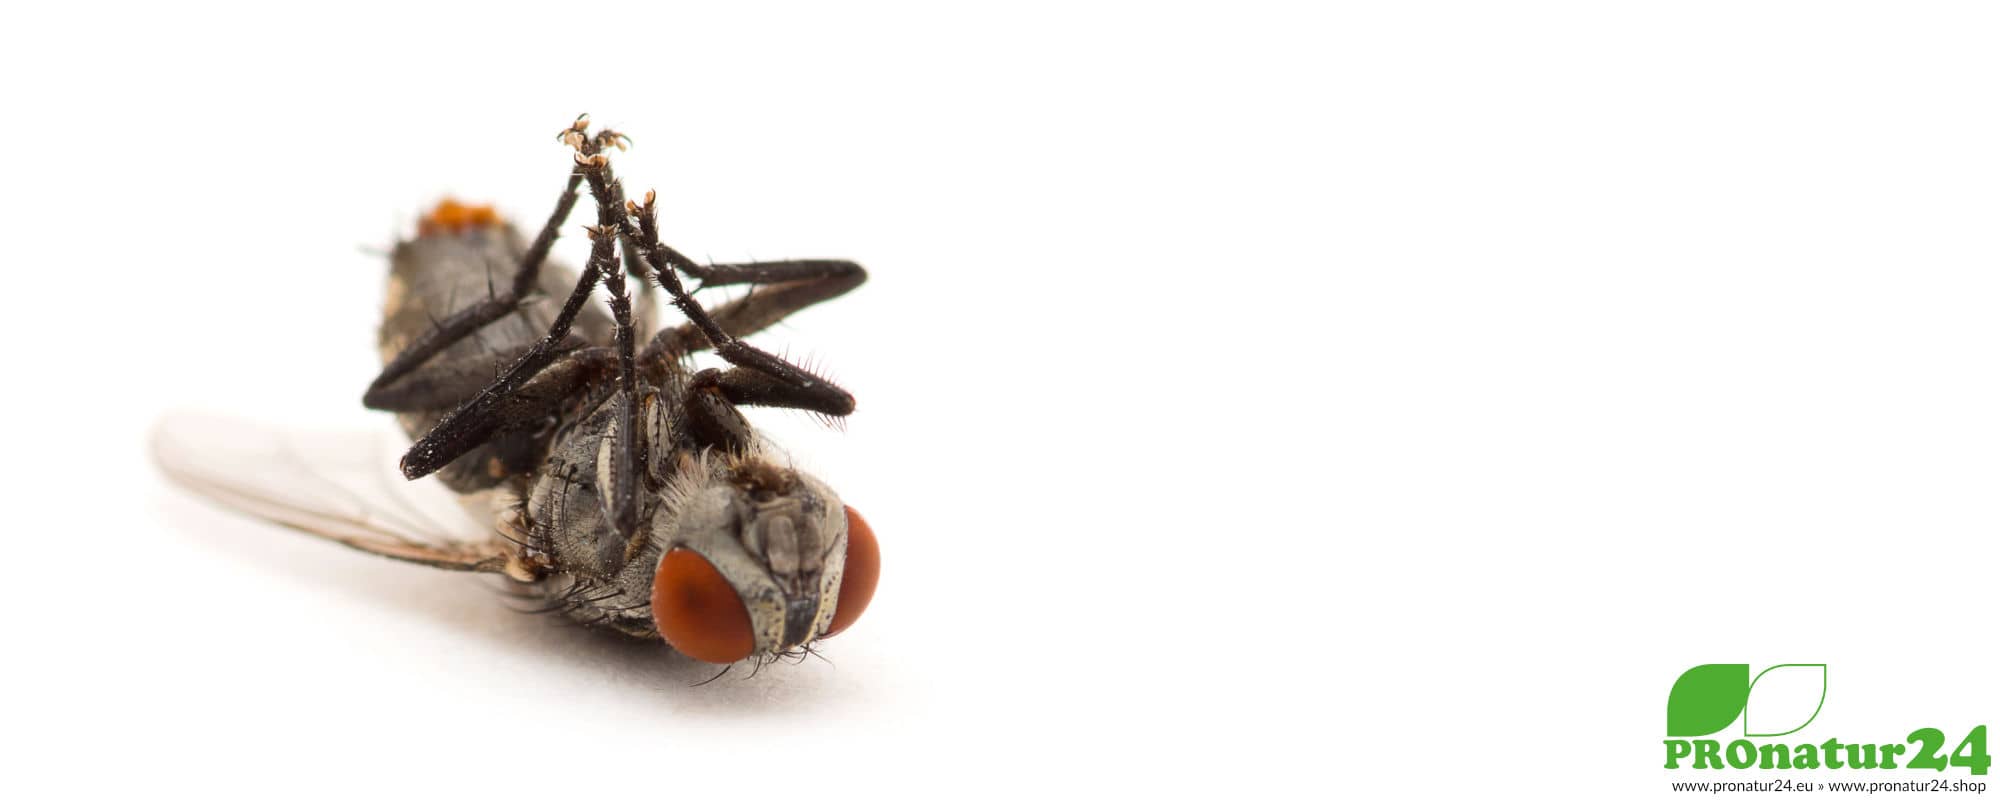 Handystrahlung könnte sich auf Insekten auswirken